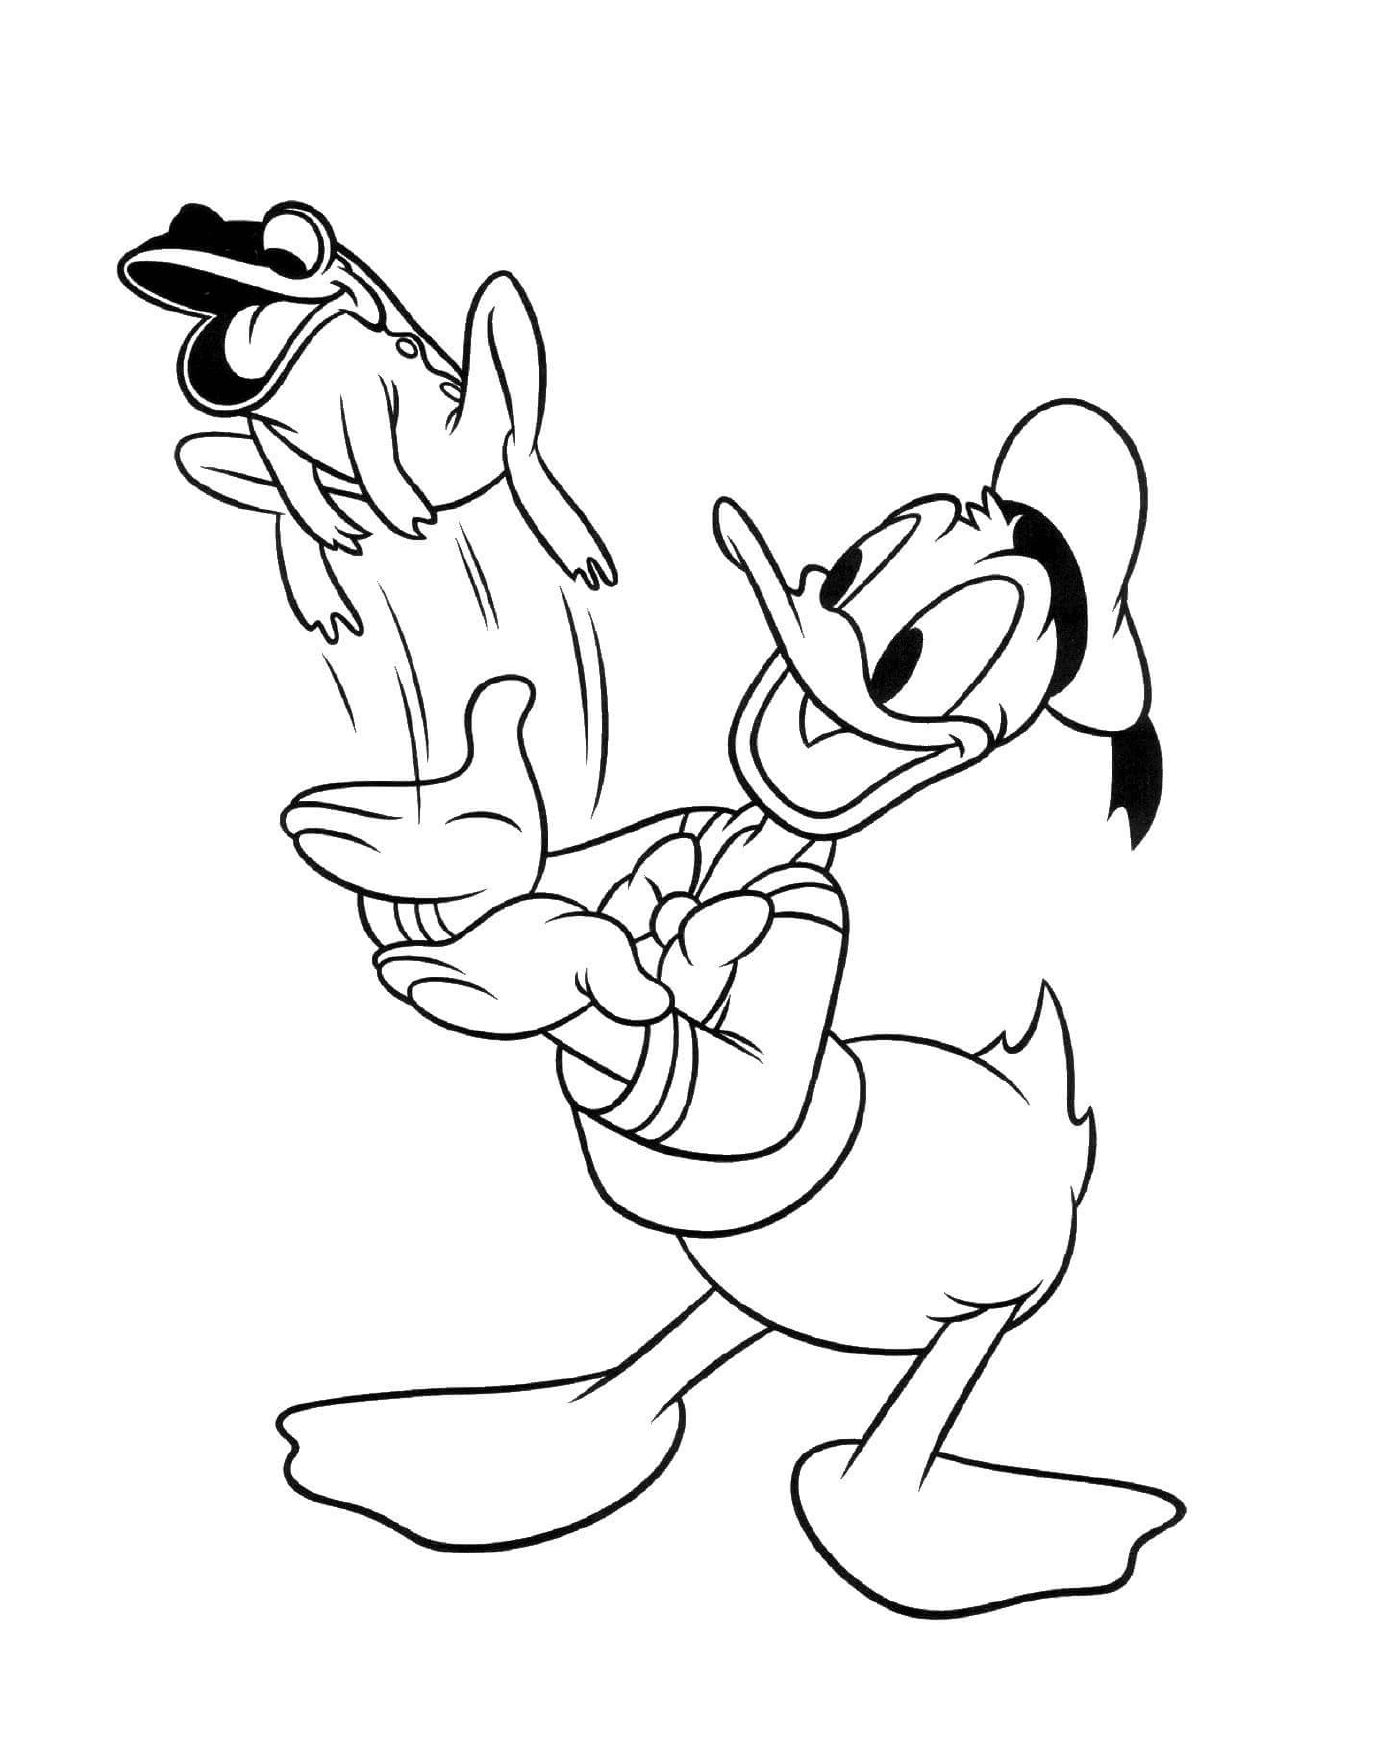  Donald Duck gioca con un cane 